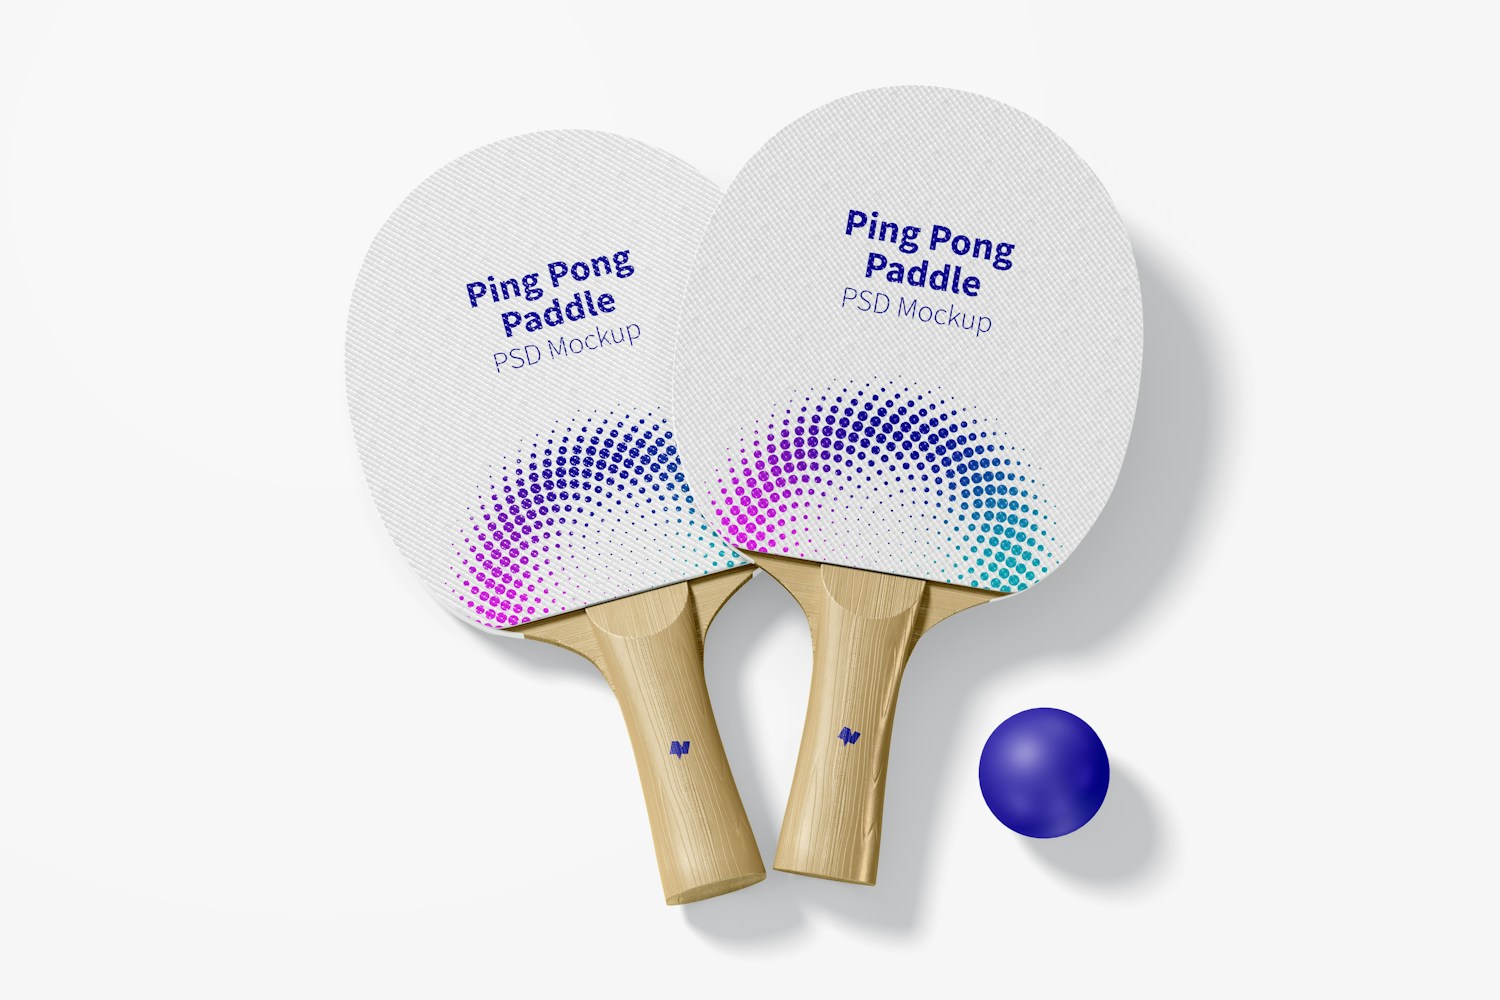 Ping Pong Paddles Mockup, Top View